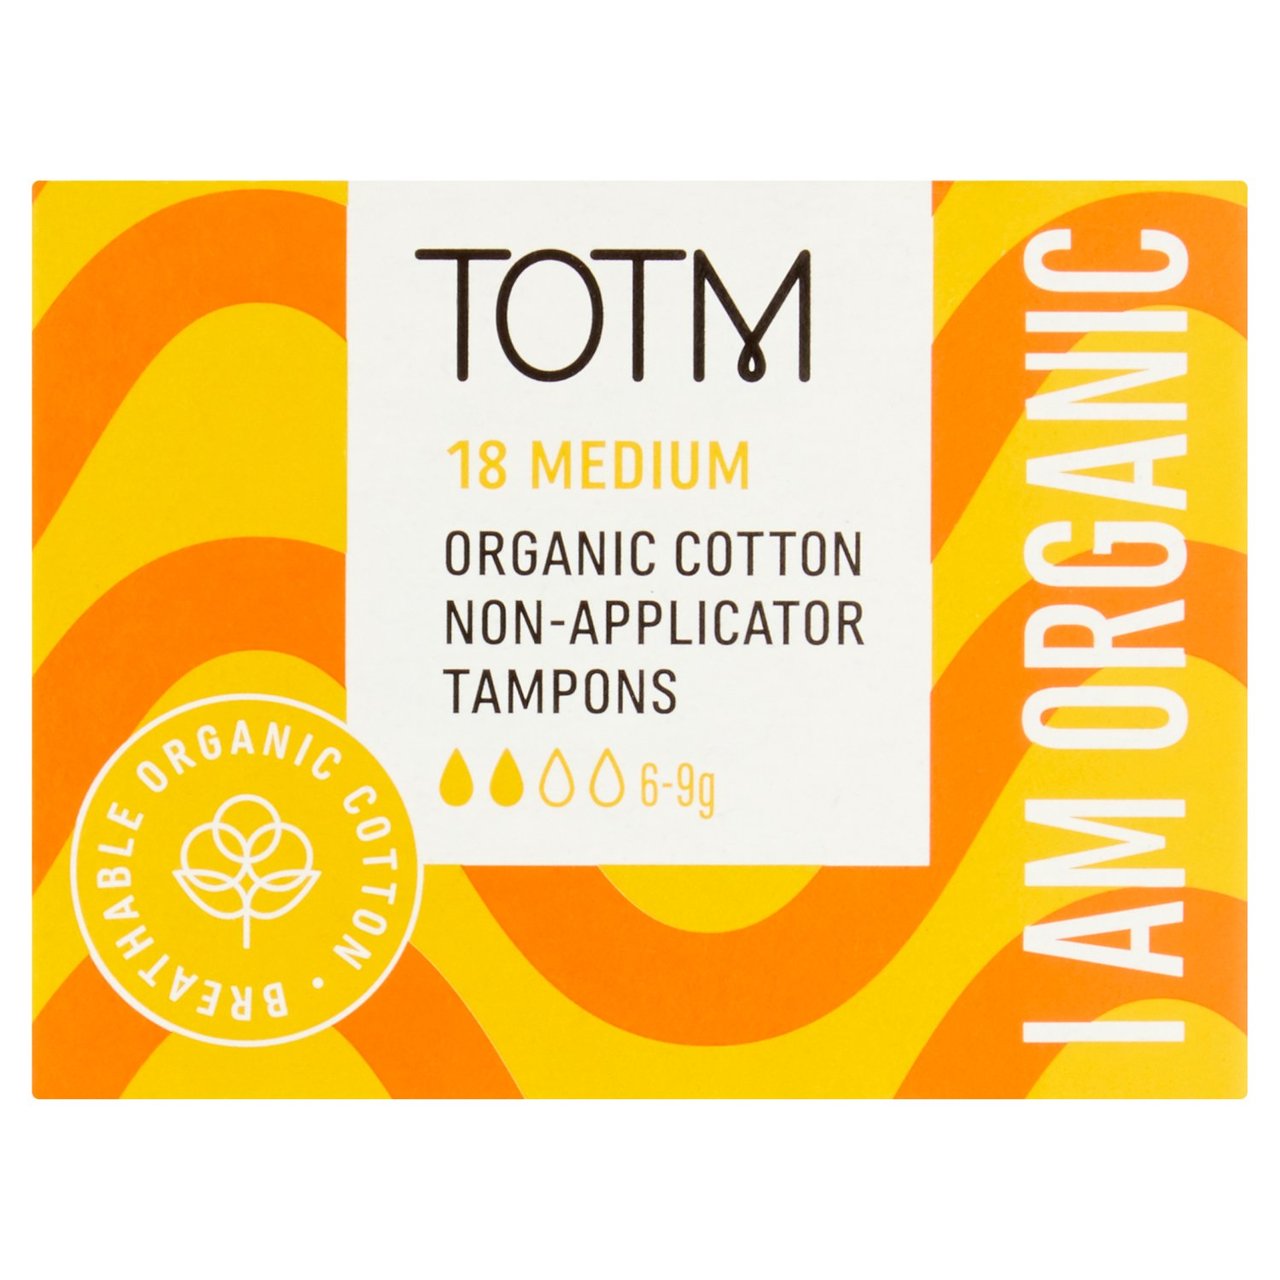 TOTM Organic Cotton Non-Applicator Tampons Medium 18 per pack